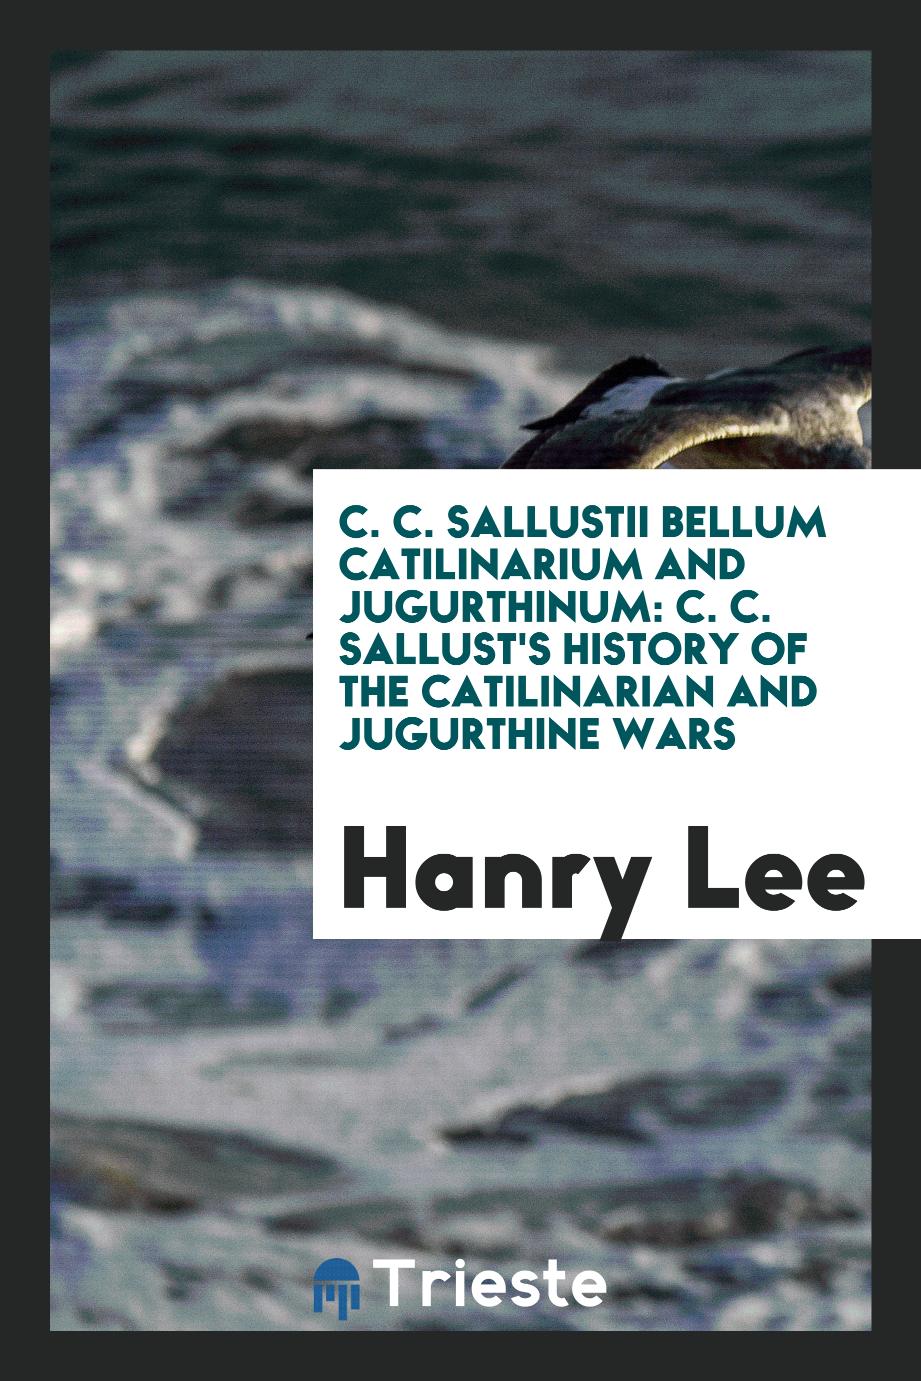 C. C. Sallustii Bellum Catilinarium and Jugurthinum: C. C. Sallust's History of the Catilinarian and Jugurthine Wars